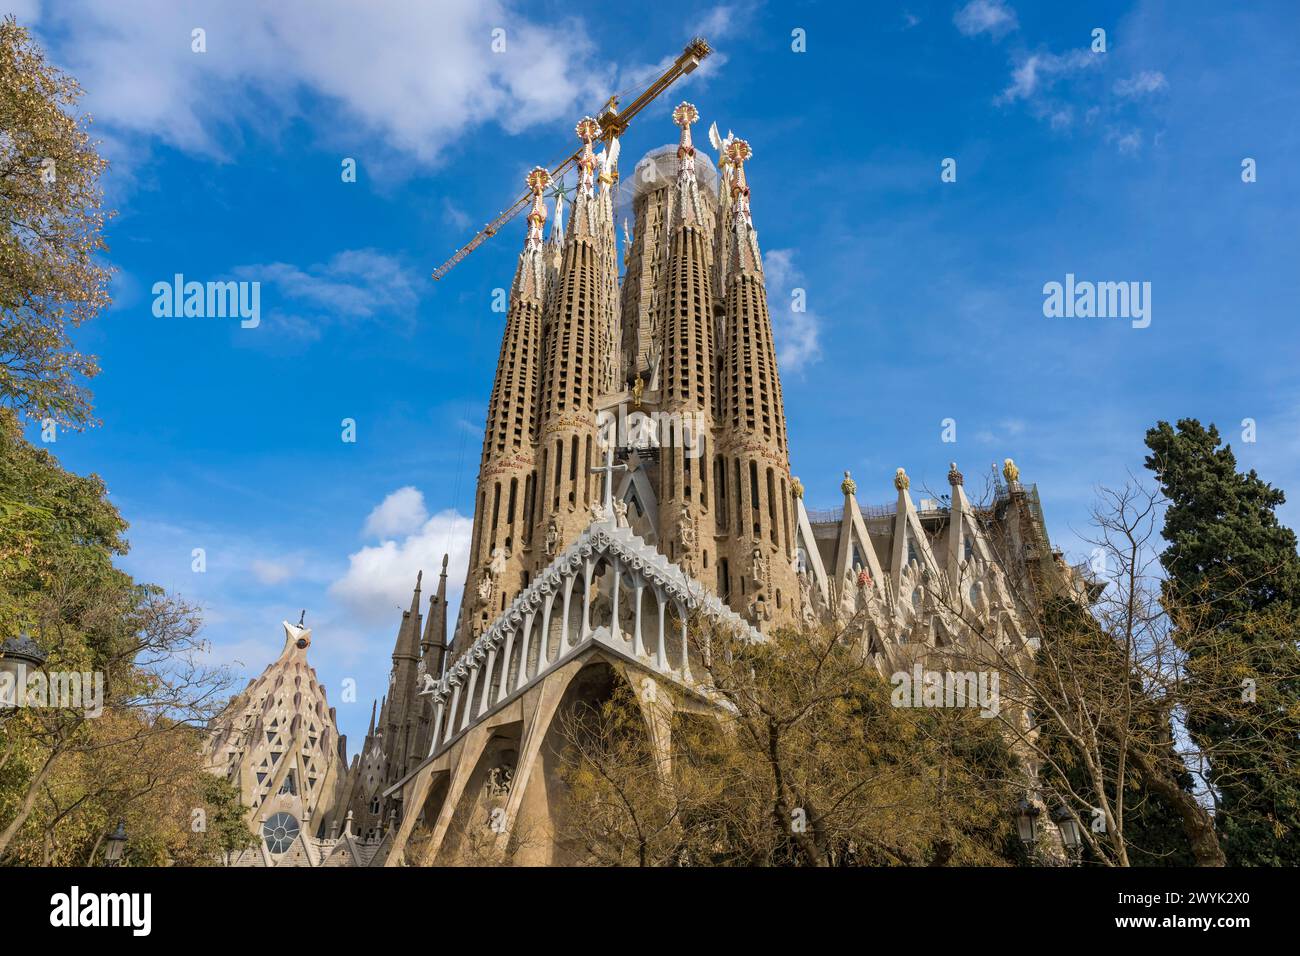 Spanien, Katalonien, Barcelona, Eixample Viertel, Sagrada Familia Basilika des katalanischen modernistischen Architekten Antoni Gaudi, die zum UNESCO-Weltkulturerbe gehört, die Passionsfassade Stockfoto